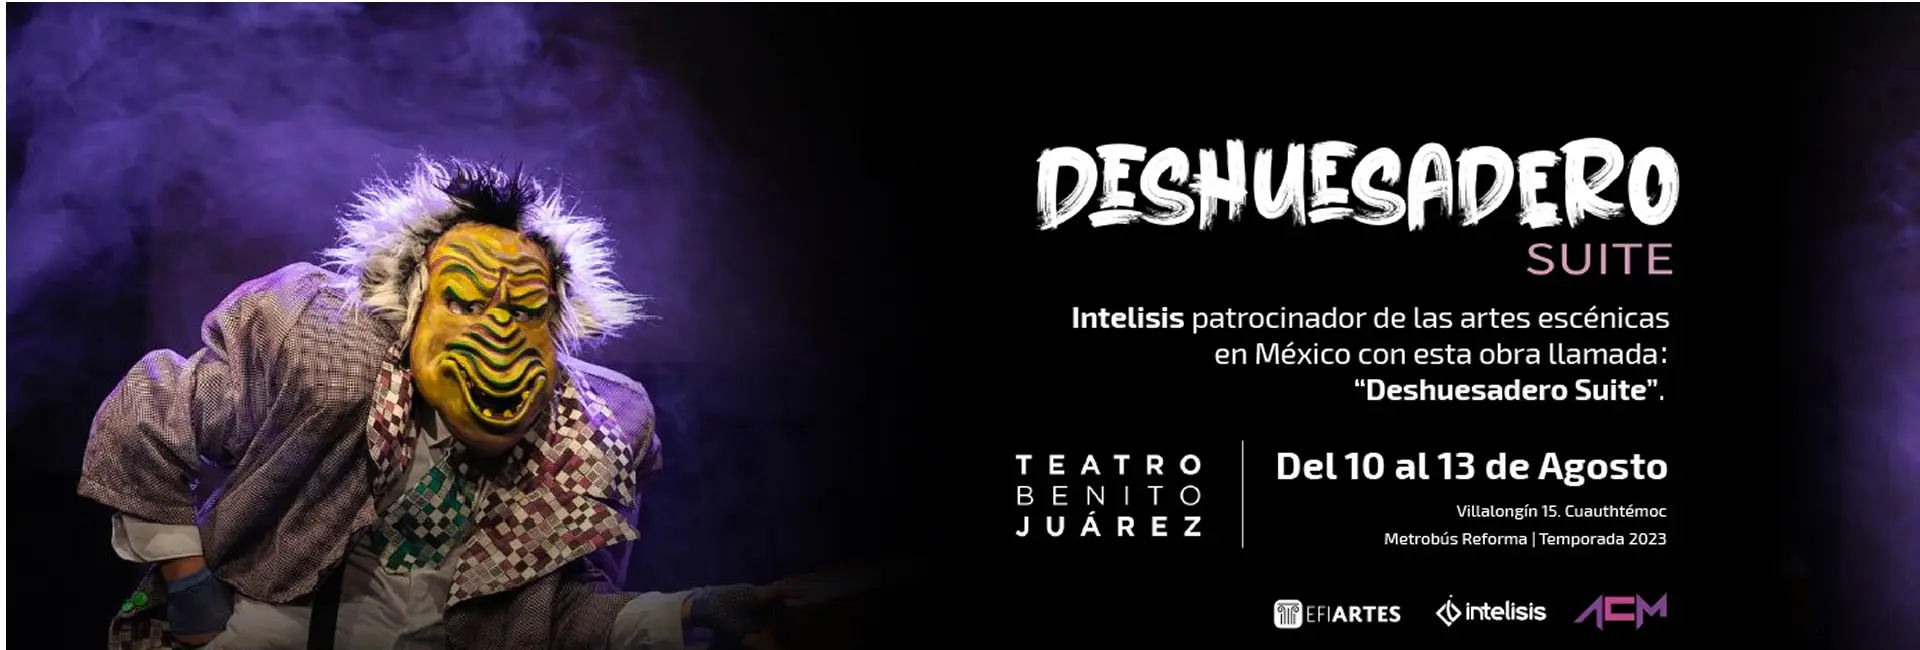 Intelisis patrocinador de la obra teatral Deshuesadero